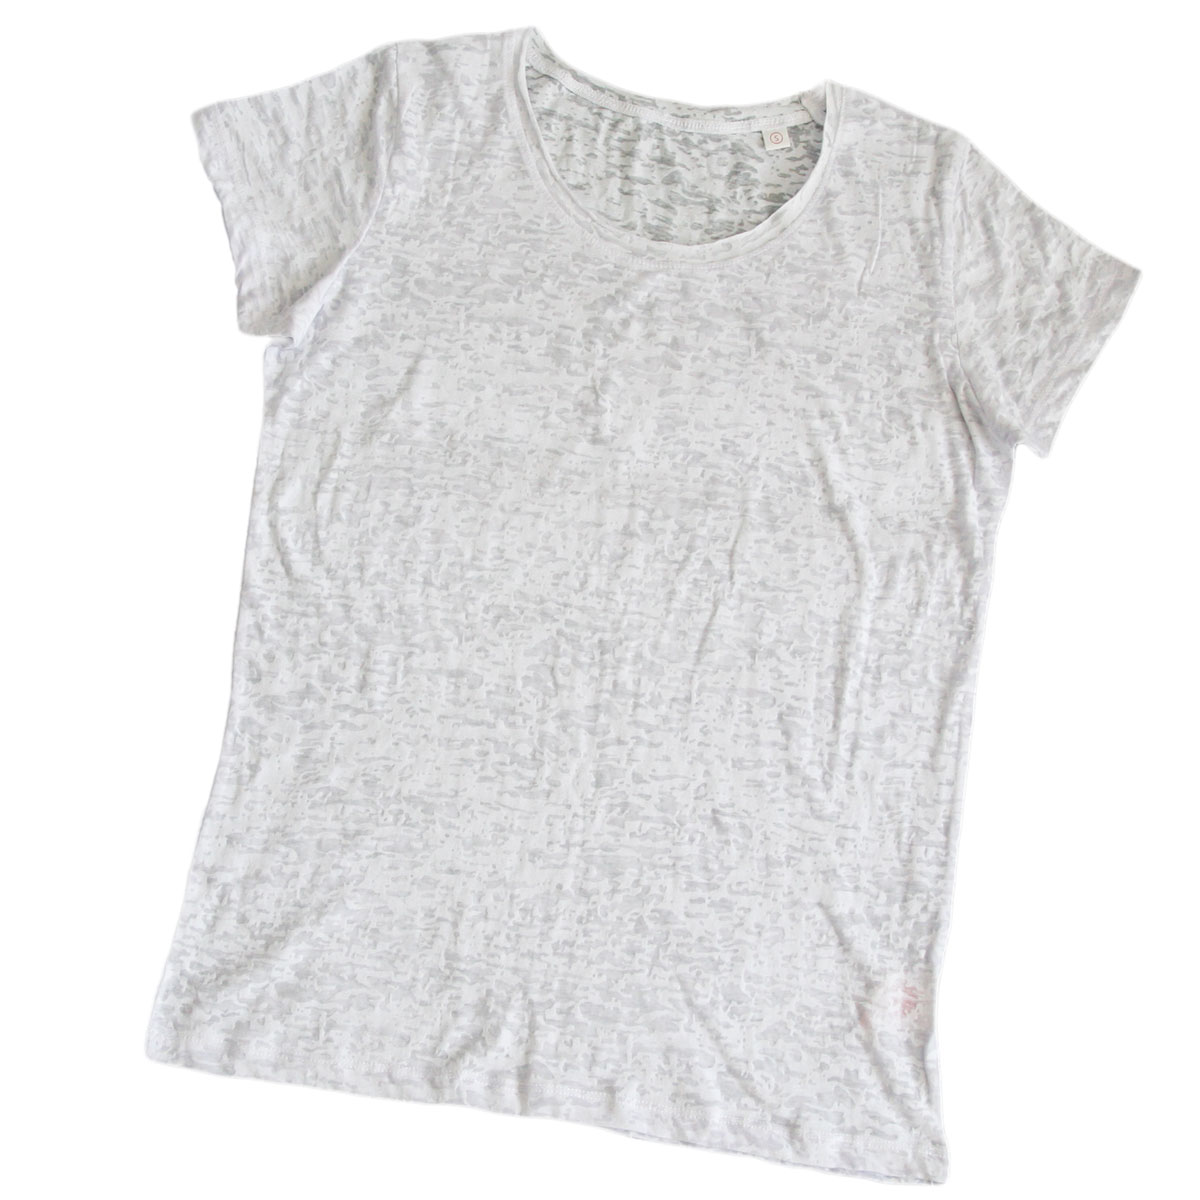 Semi-transparent women’s T-shirt for sublimation